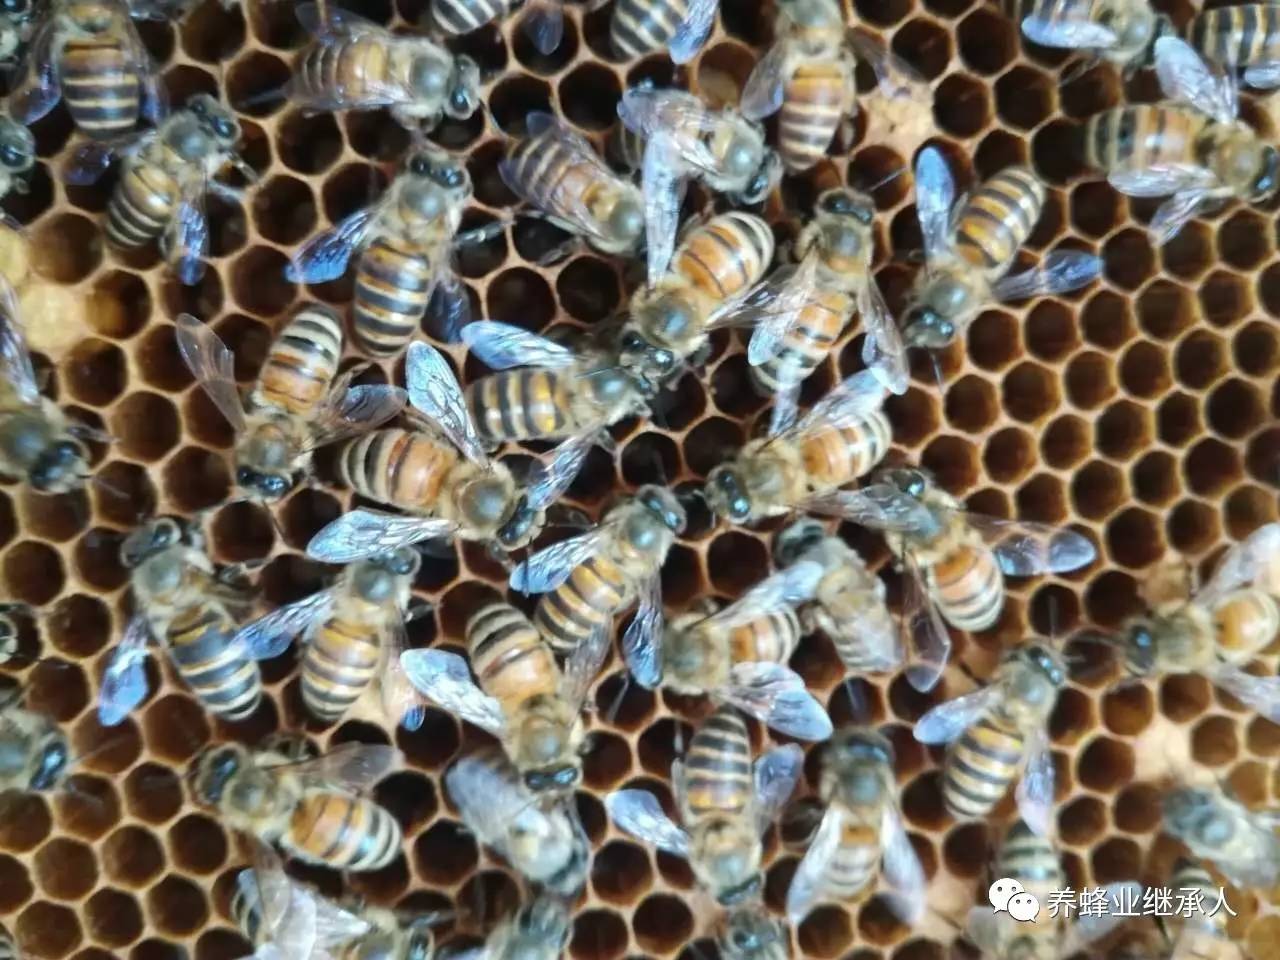 有望解决意蜂蜂螨与中蜂巢虫问题。。。